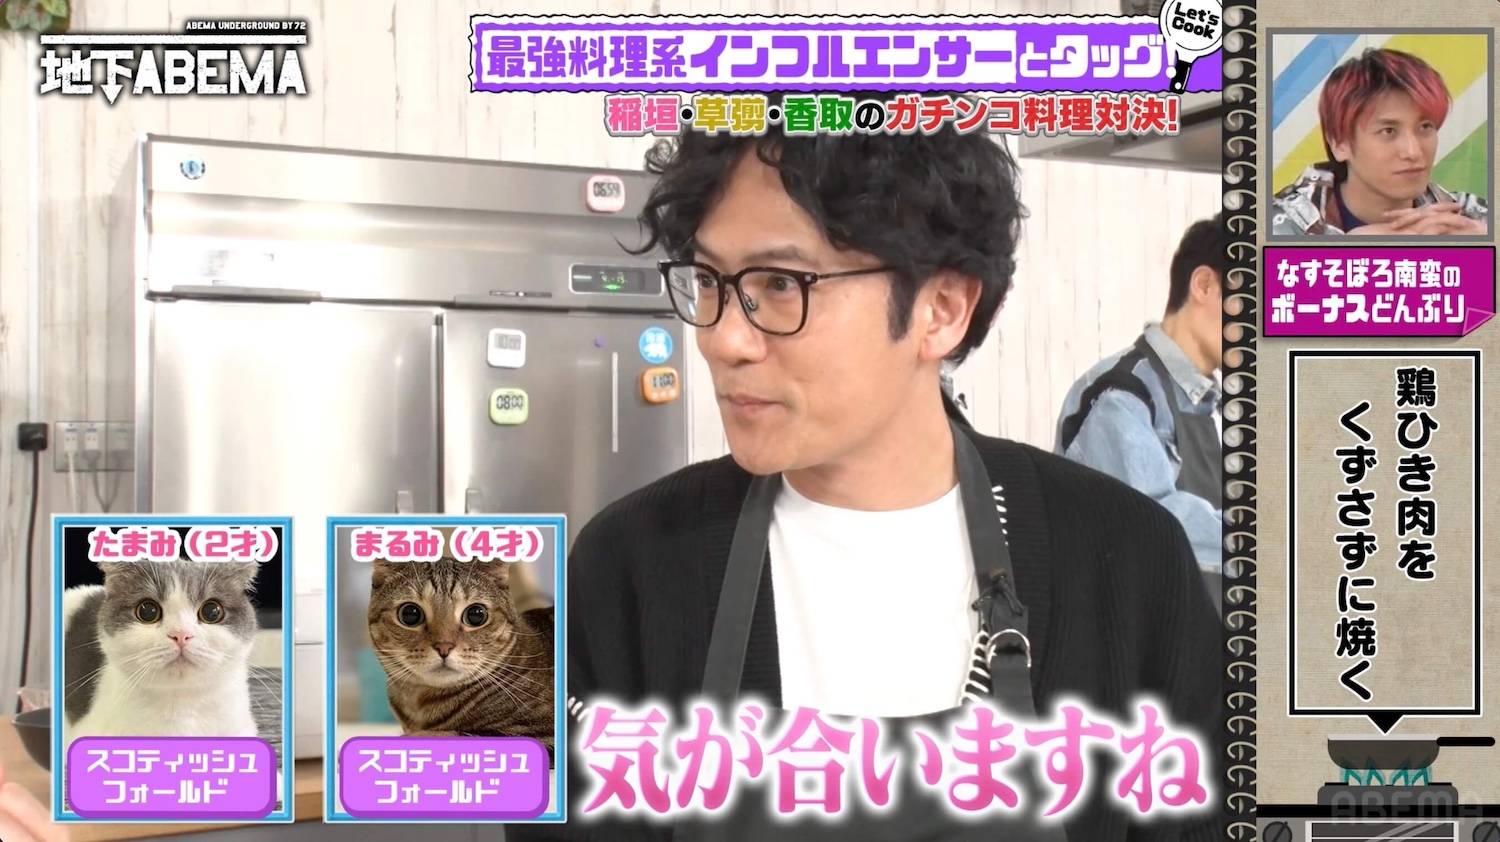 3匹飼う愛猫家の稲垣吾郎、料理番組で猫トーク止まらずキャイ～ン・天野からツッコミ「動物中心の話じゃん」